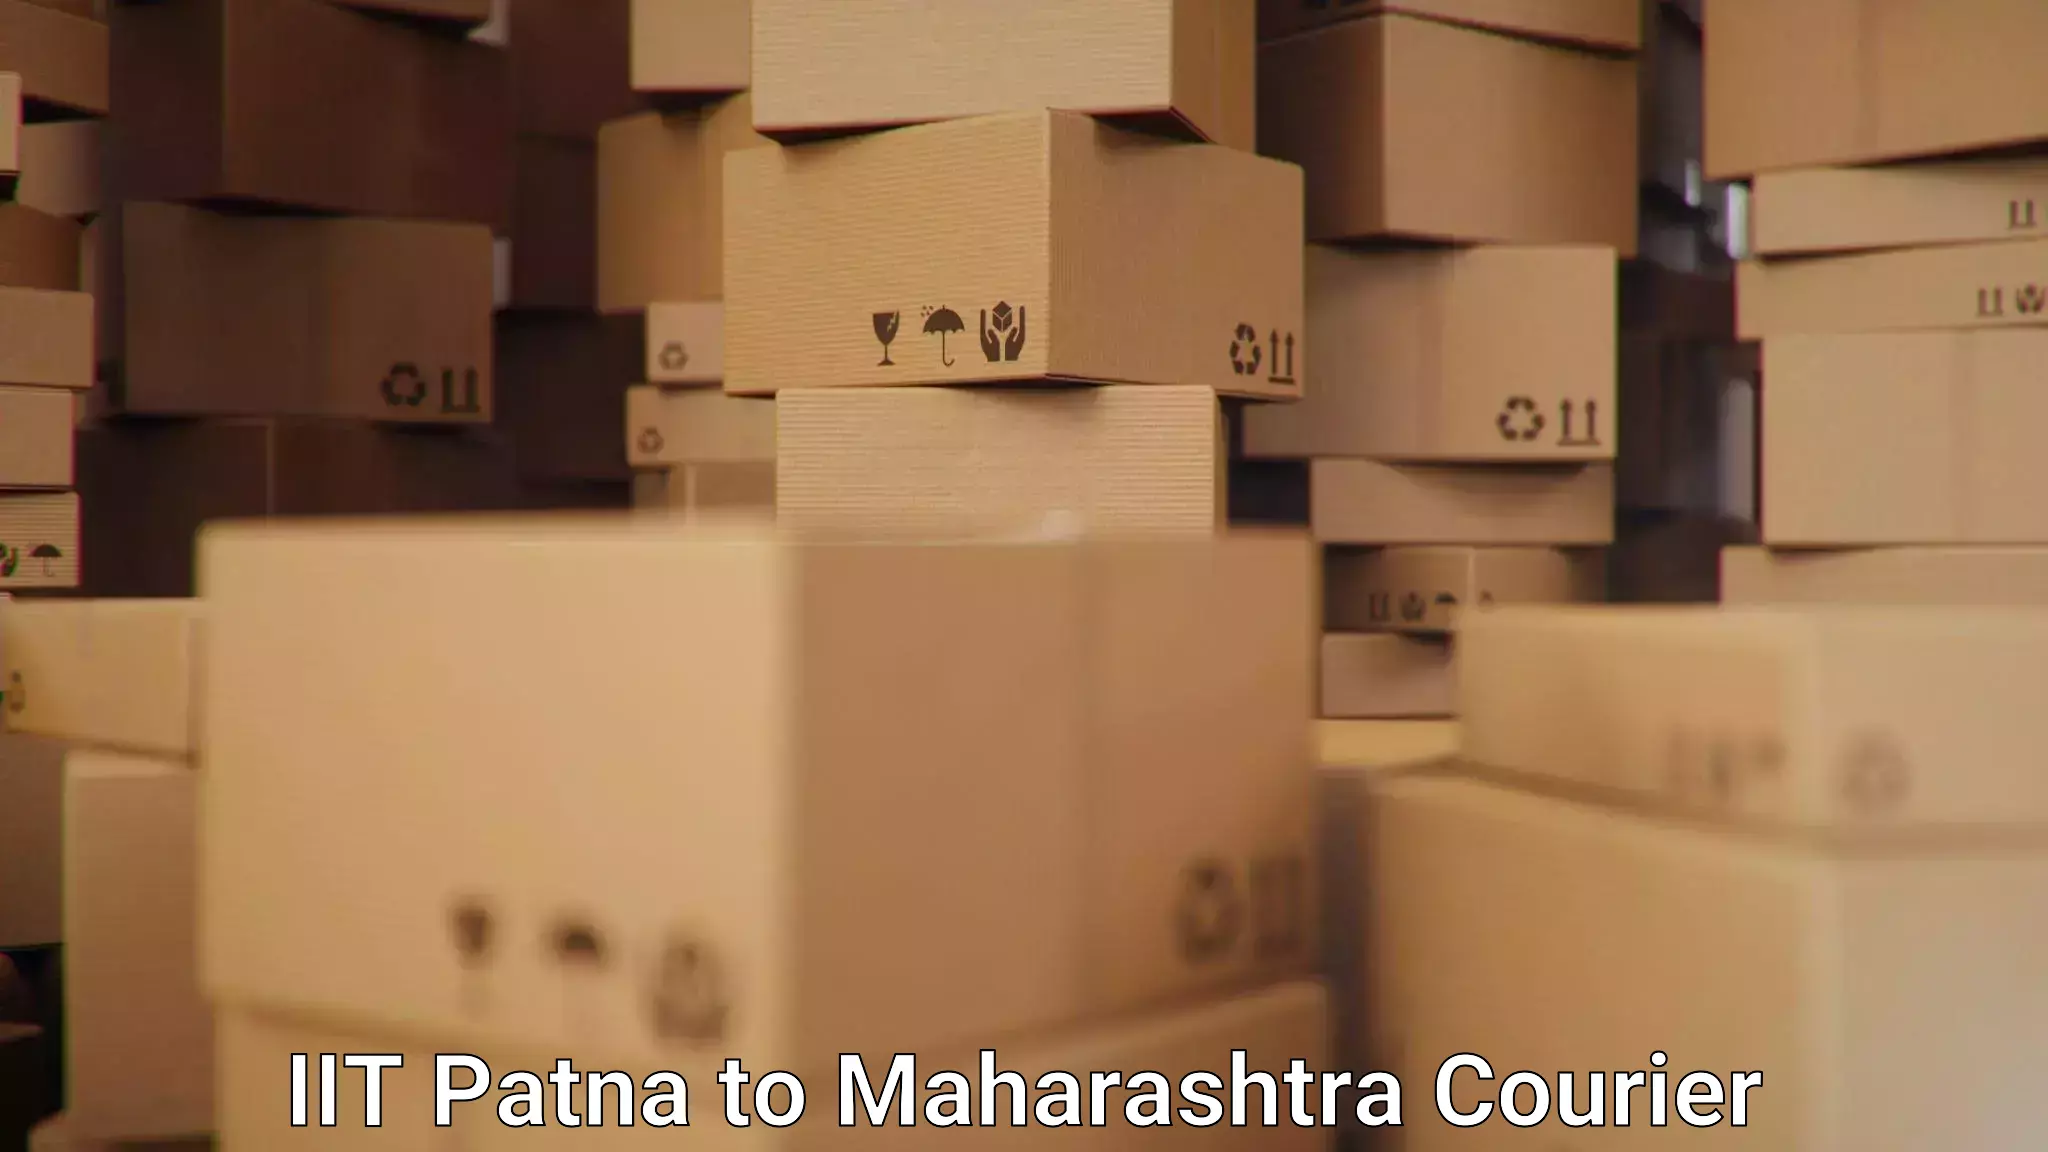 Premium delivery services IIT Patna to Shivajinagar